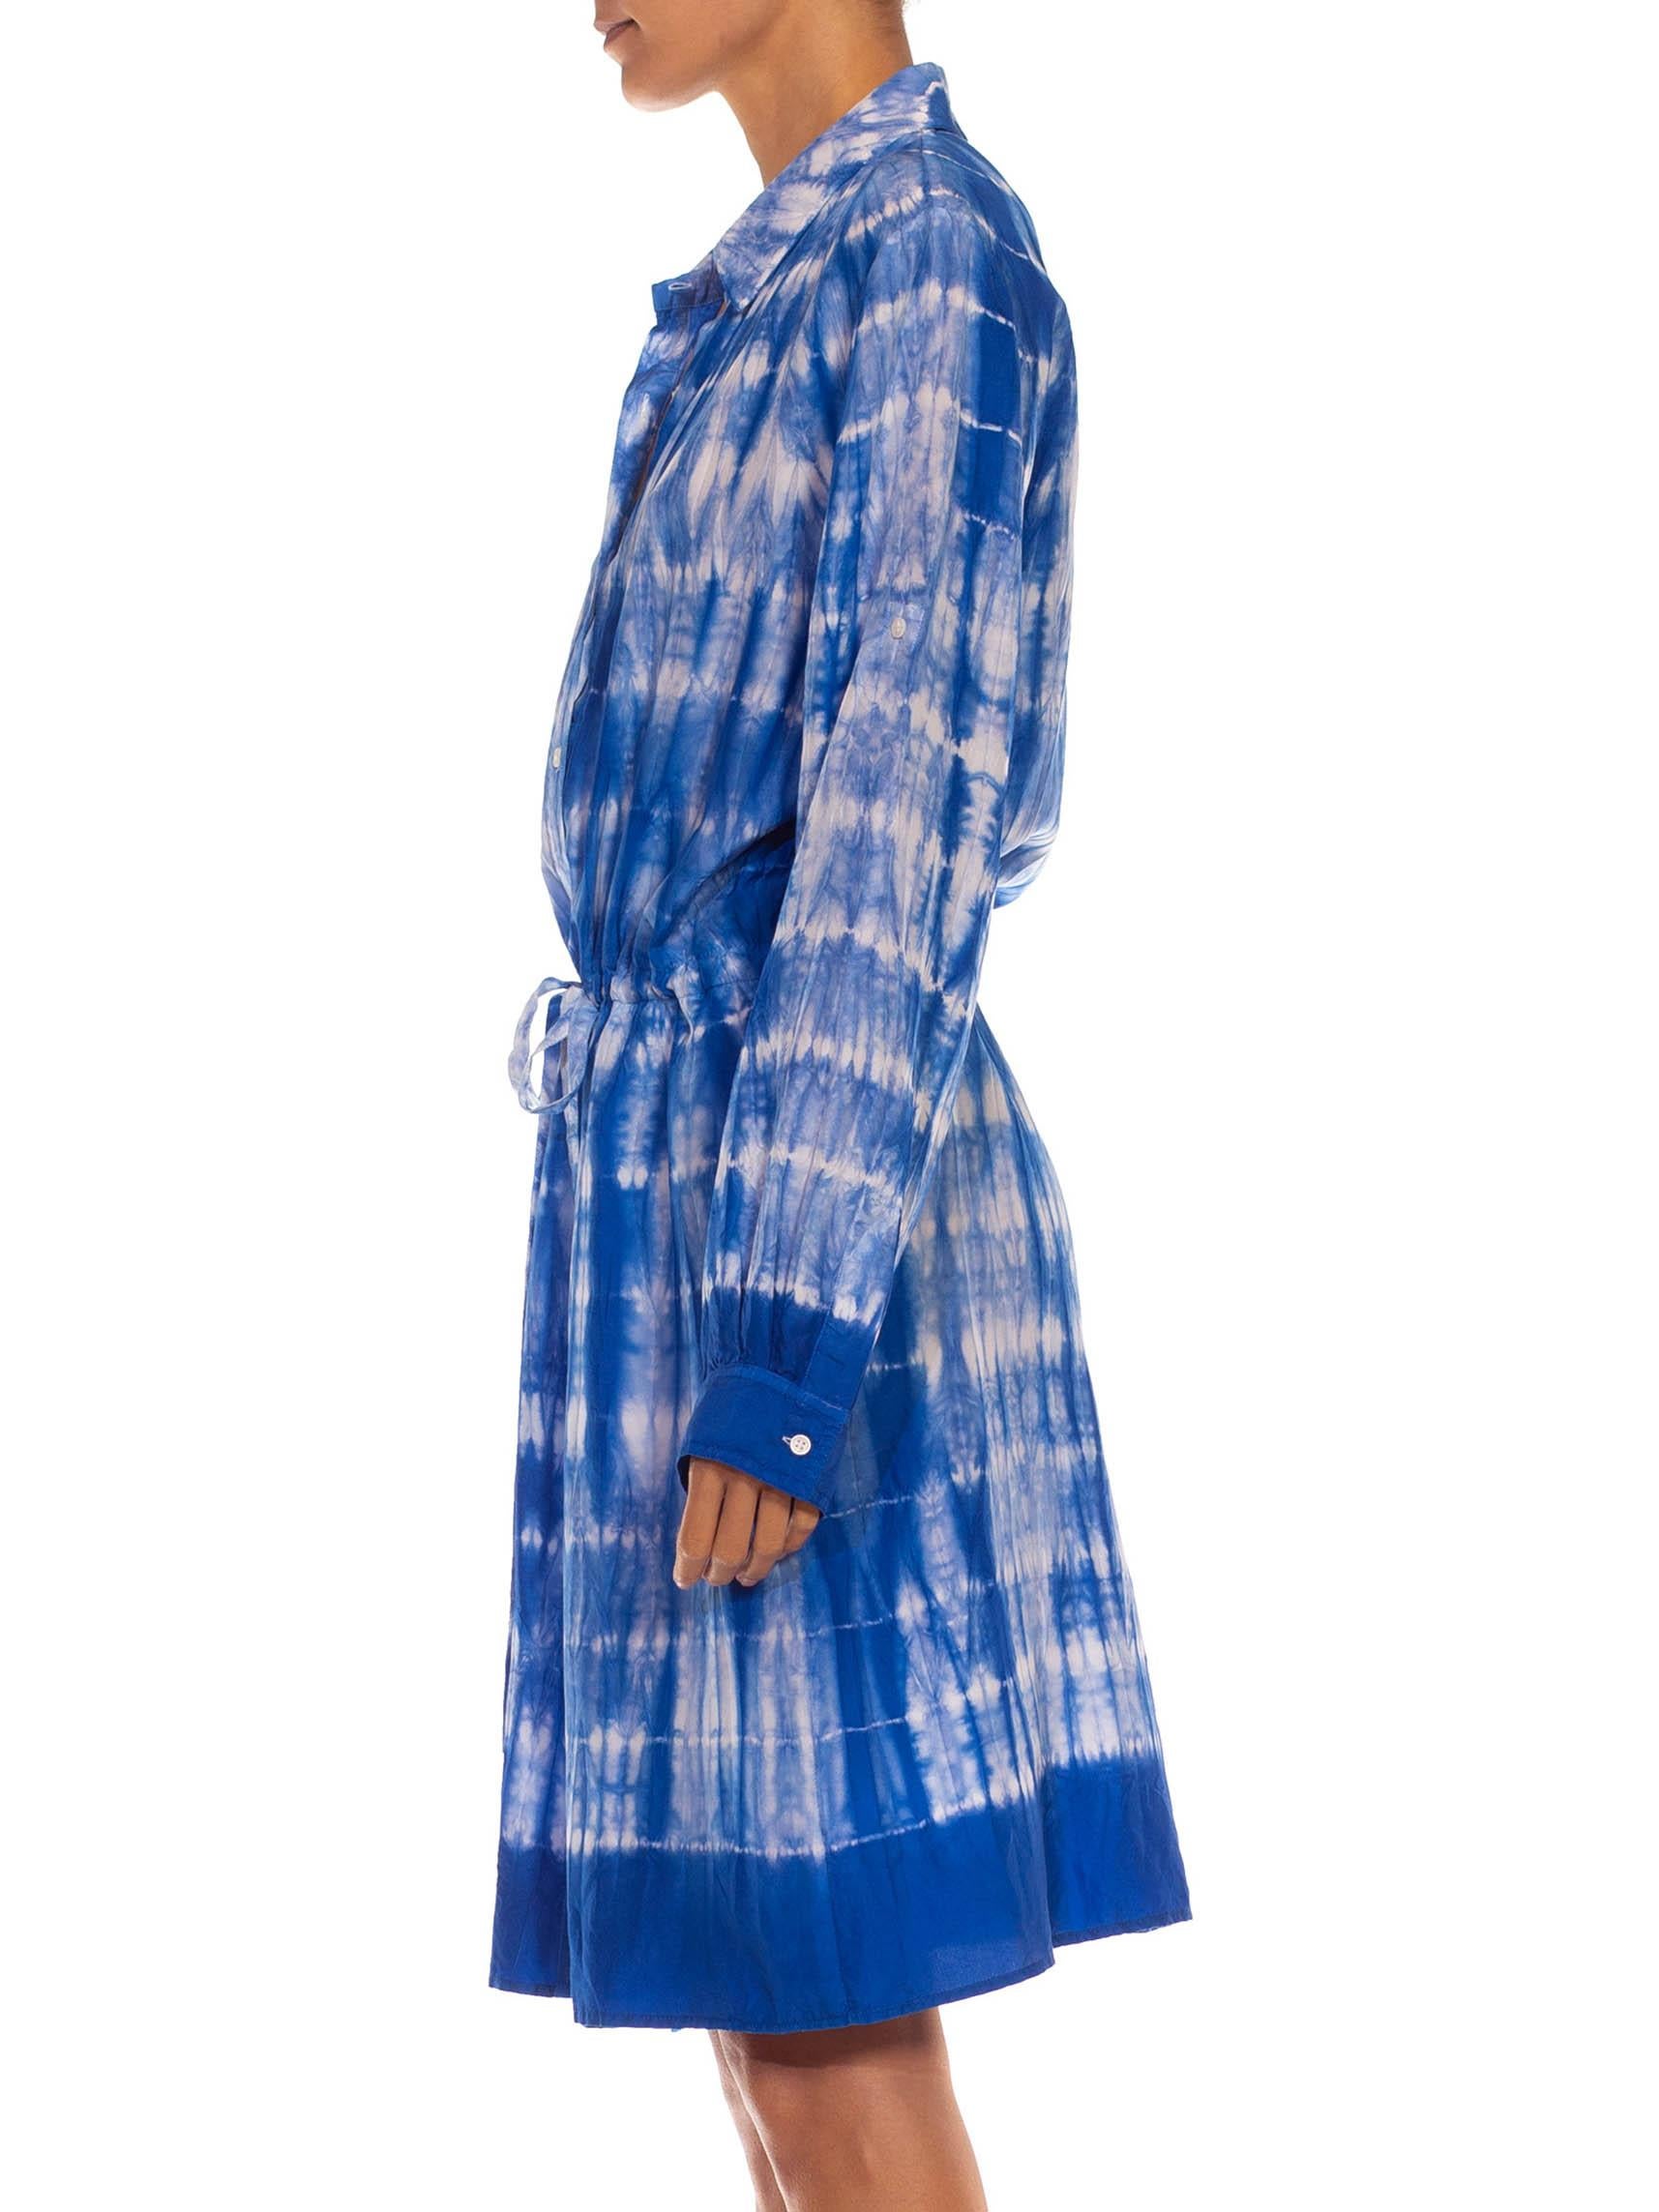 Adjustable Waist 1990S Blue & White Silk Tie Dye Dress 